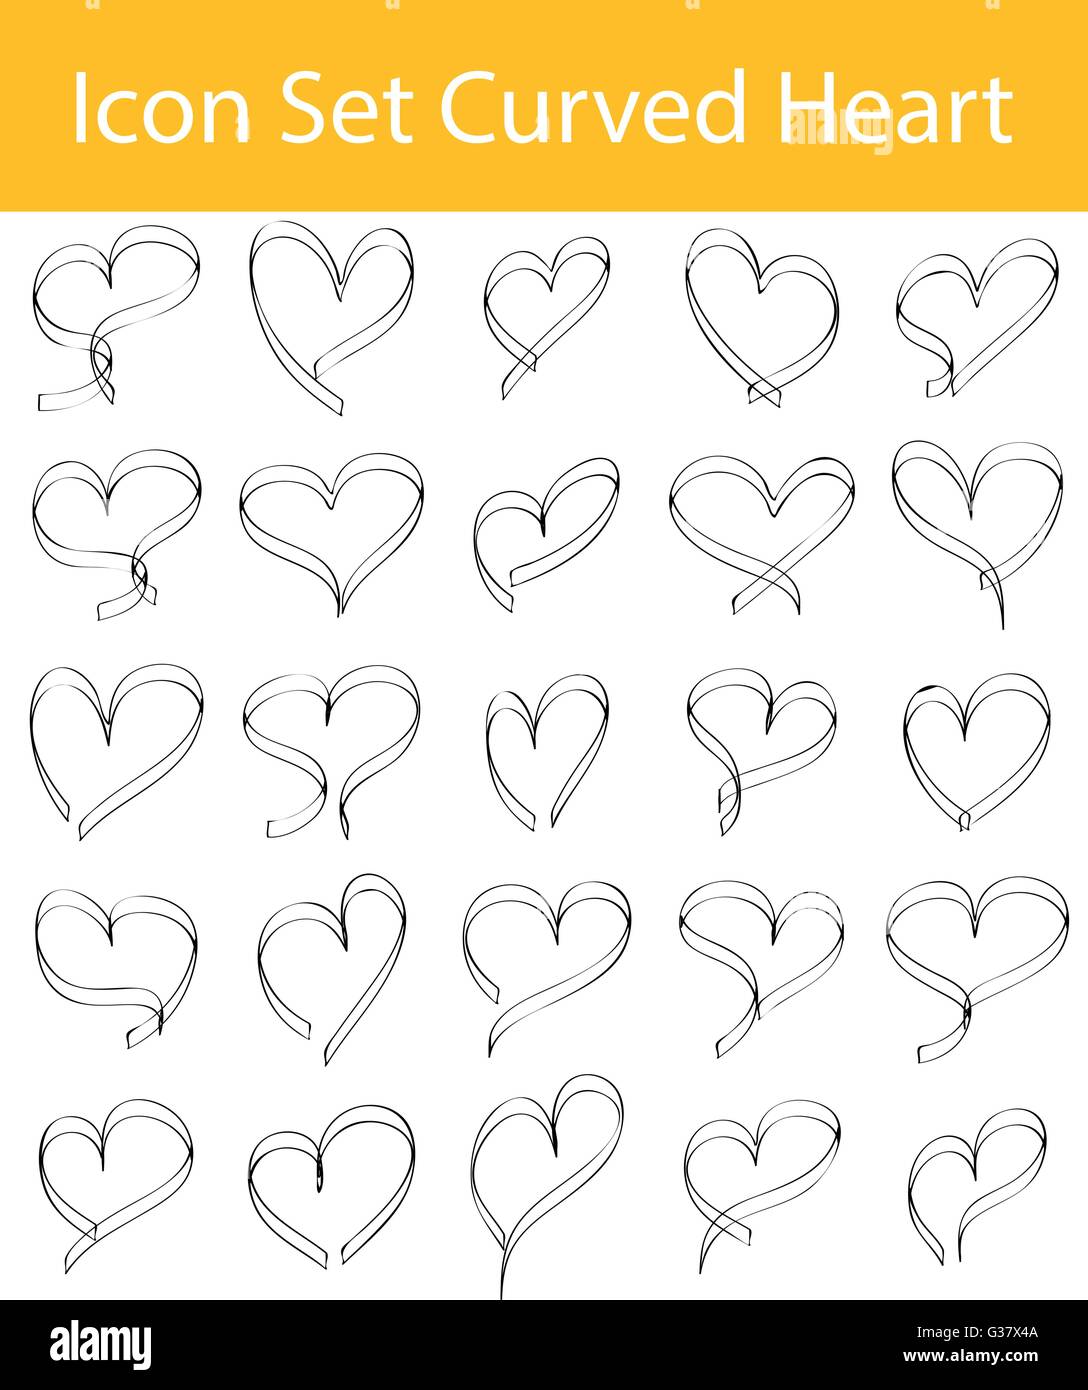 Gezeichnet von Doodle ausgekleidet Icon Set gebogen Herzen mit 16 Icons für den kreativen Einsatz in Grafik-design Stock Vektor